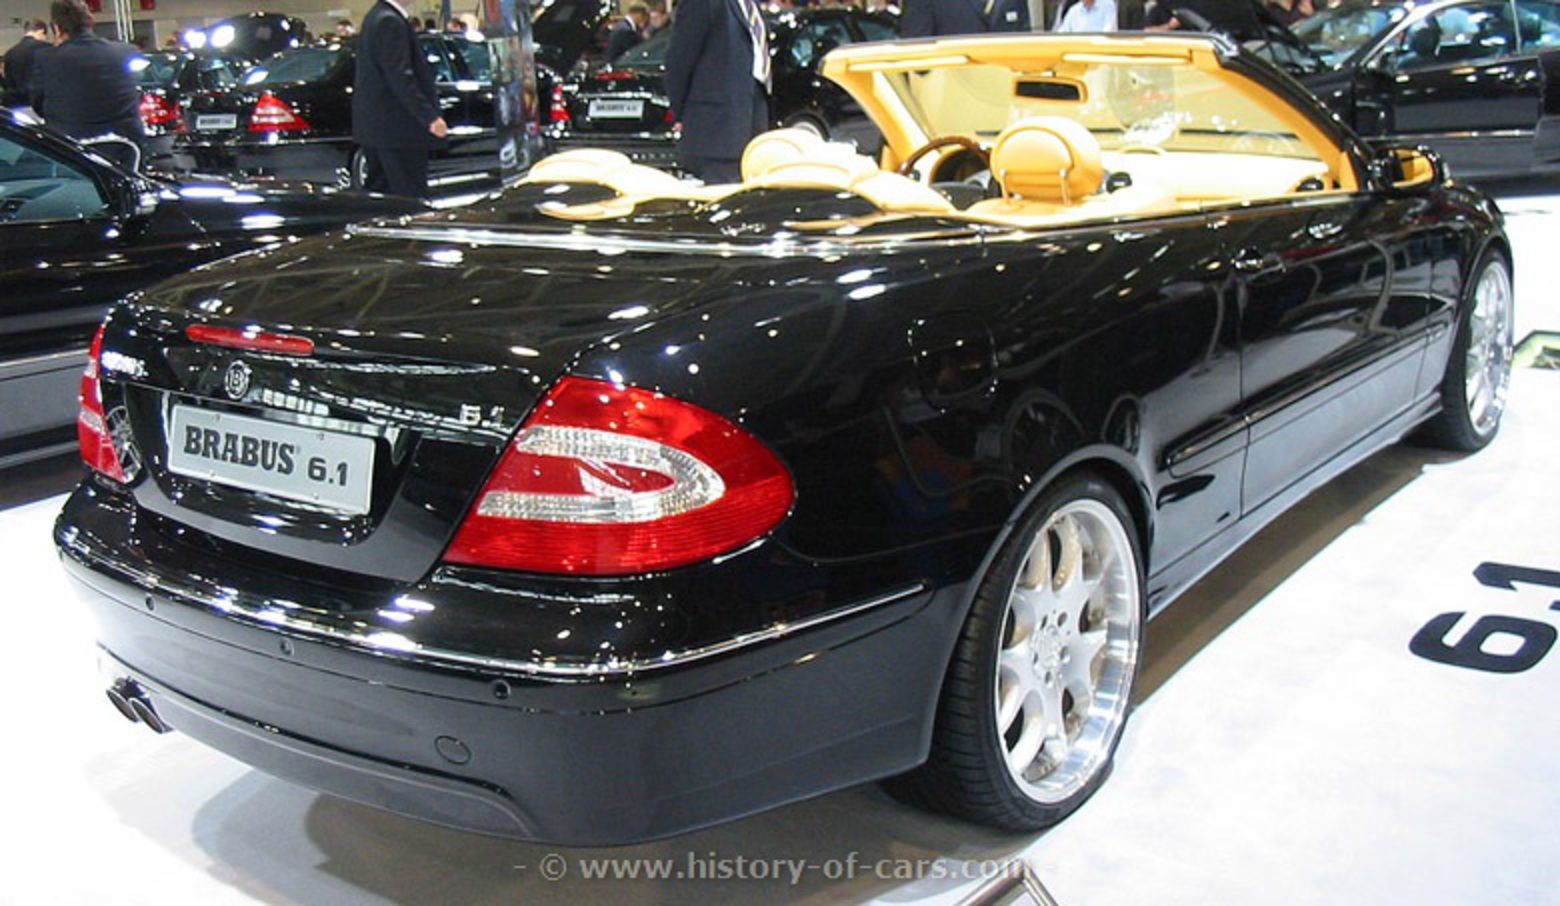 mercedes 2002 a209 clk brabus 61 cabriolet - l'histoire des voitures...